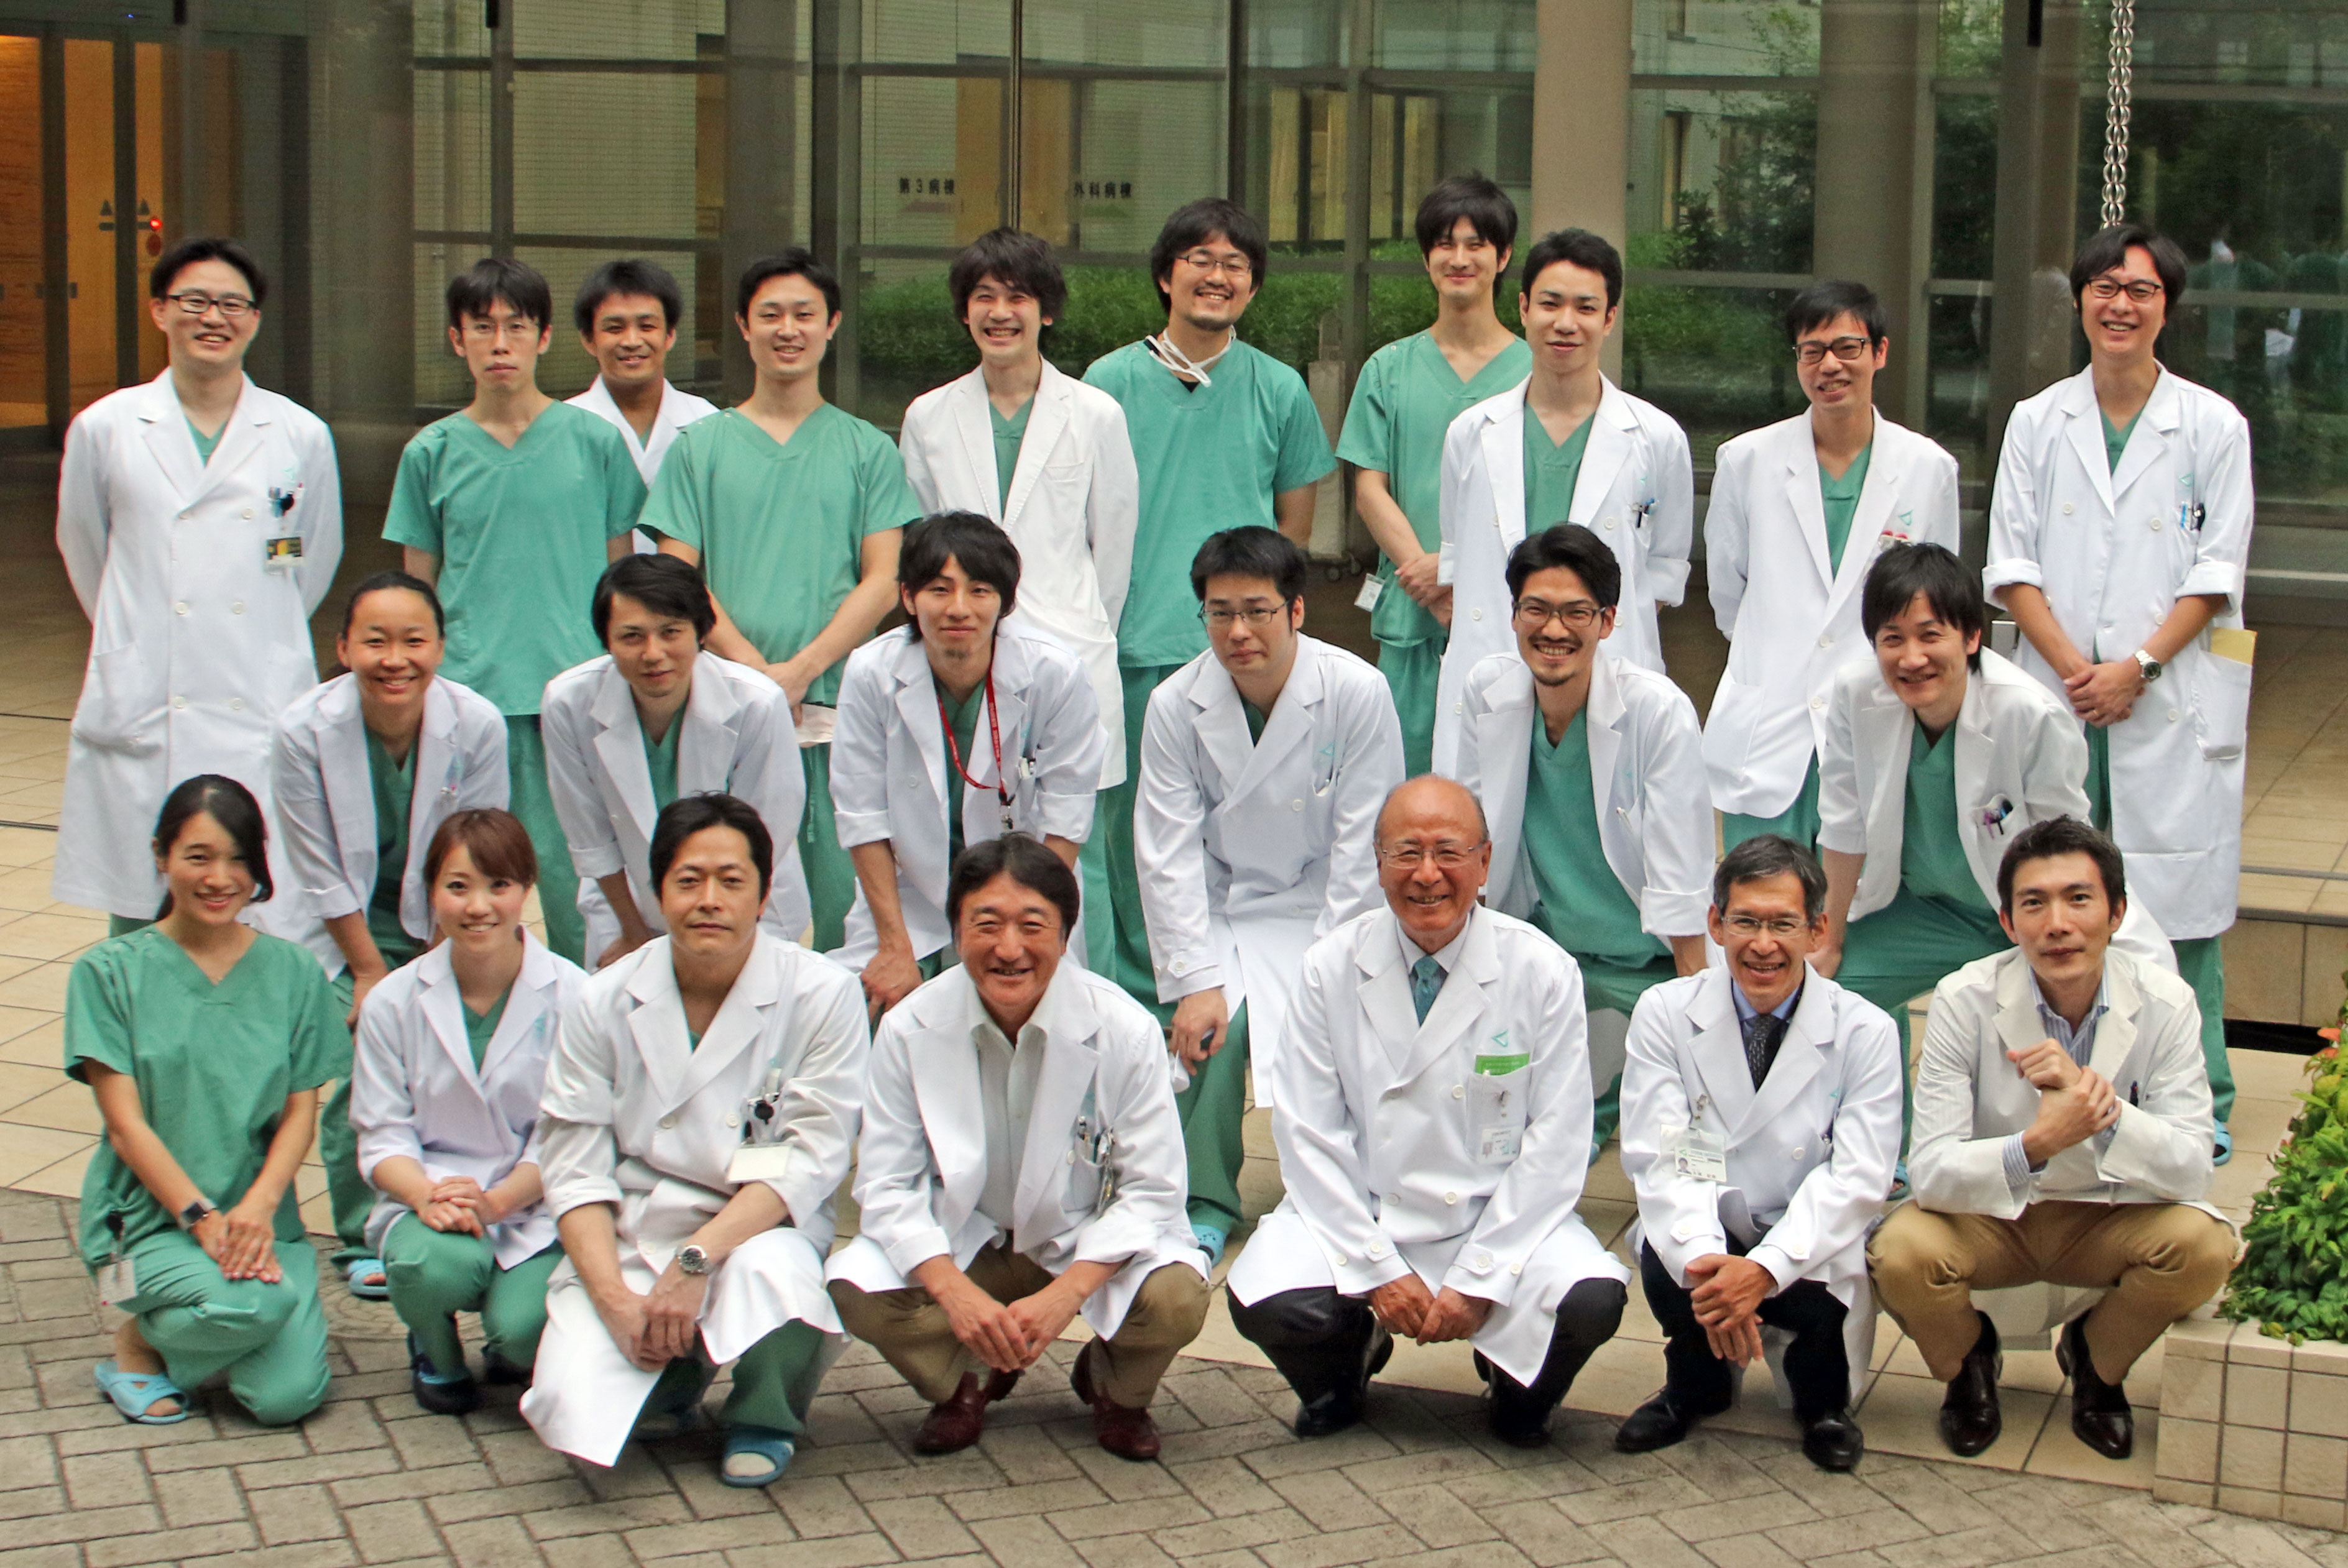 杏林大学医学部付属病院 杏林大学形成外科研修プログラム